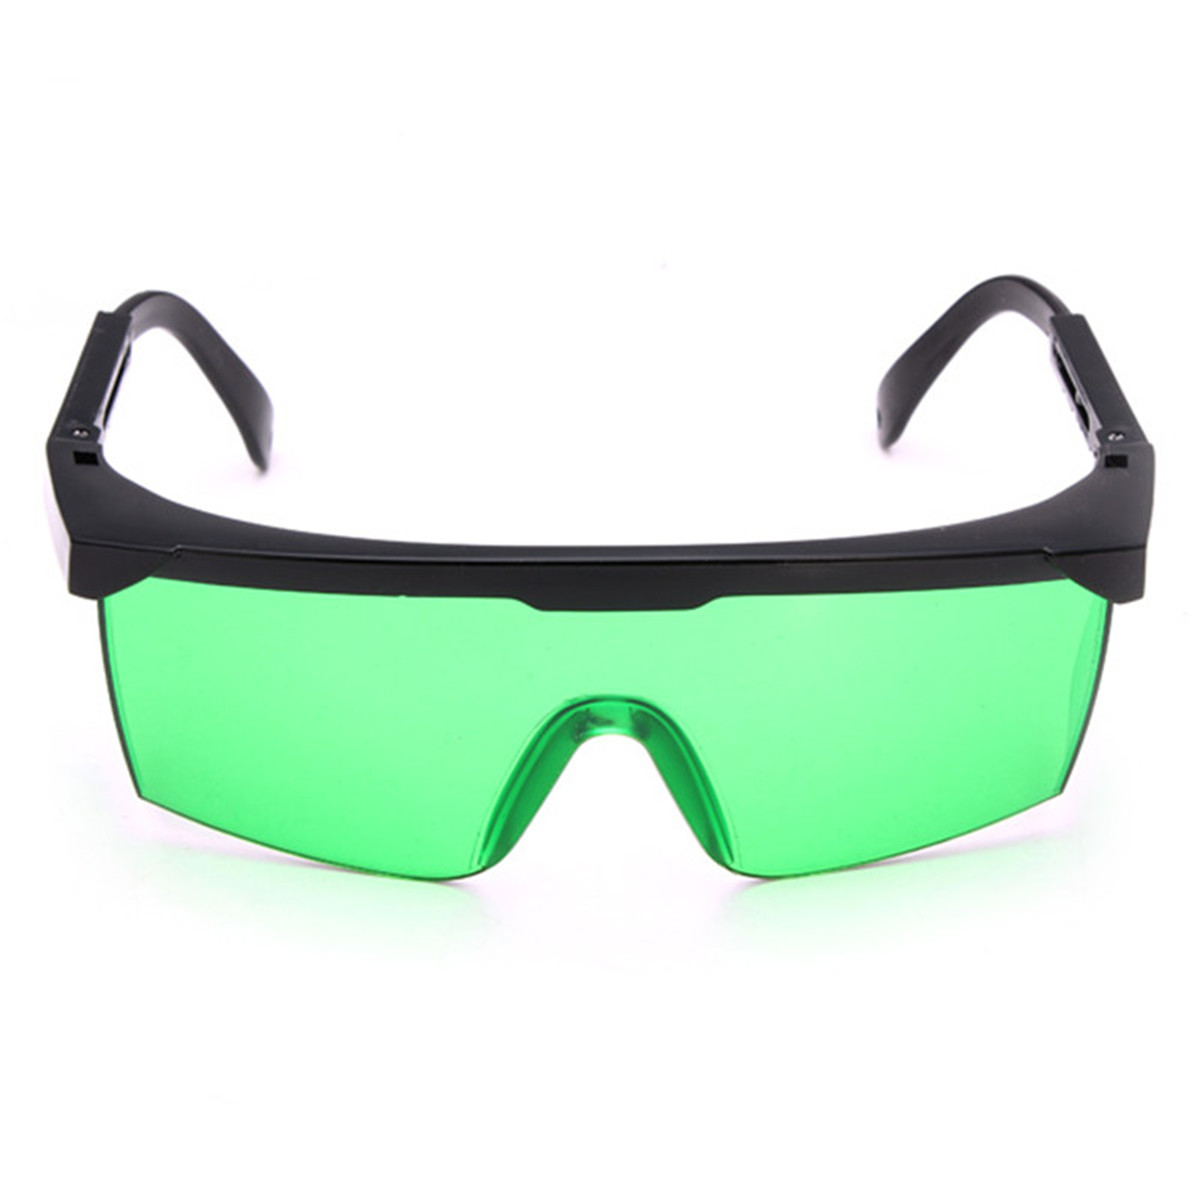 EleksMakerreg-Blue-violet-Laser-Goggles-Safety-Glasses-Laser-Protective-Eyewear-955972